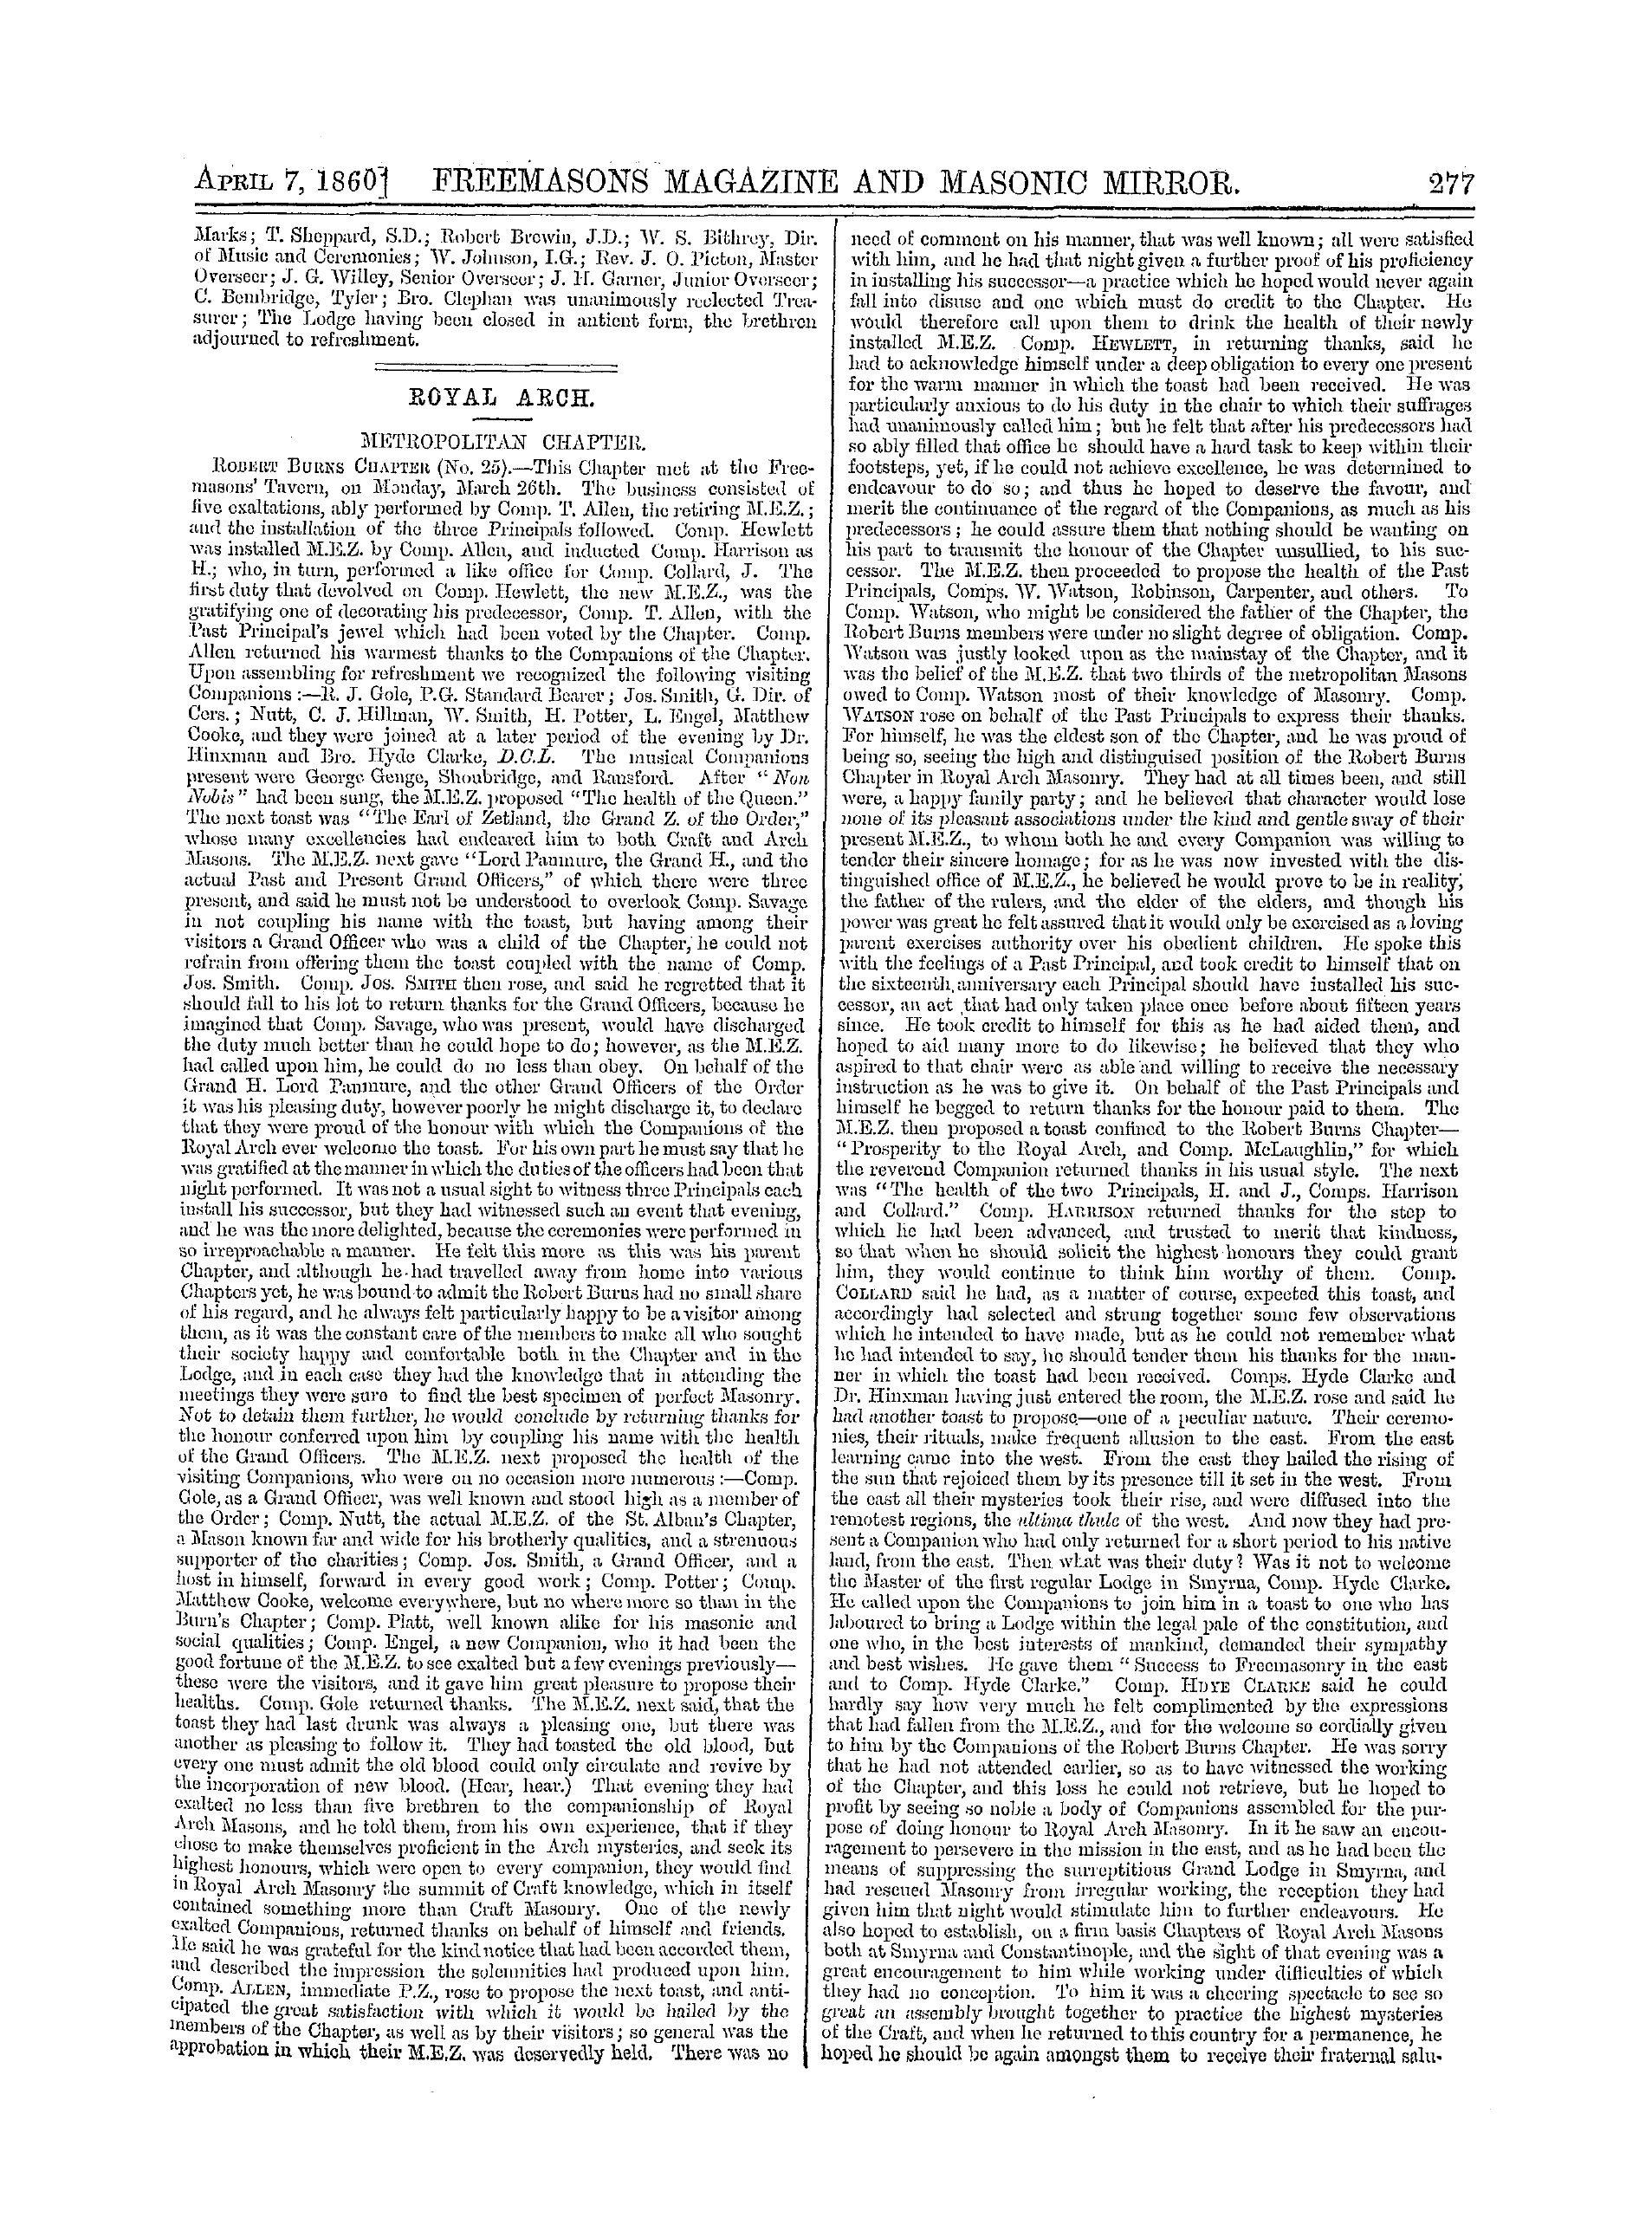 The Freemasons' Monthly Magazine: 1860-04-07: 17